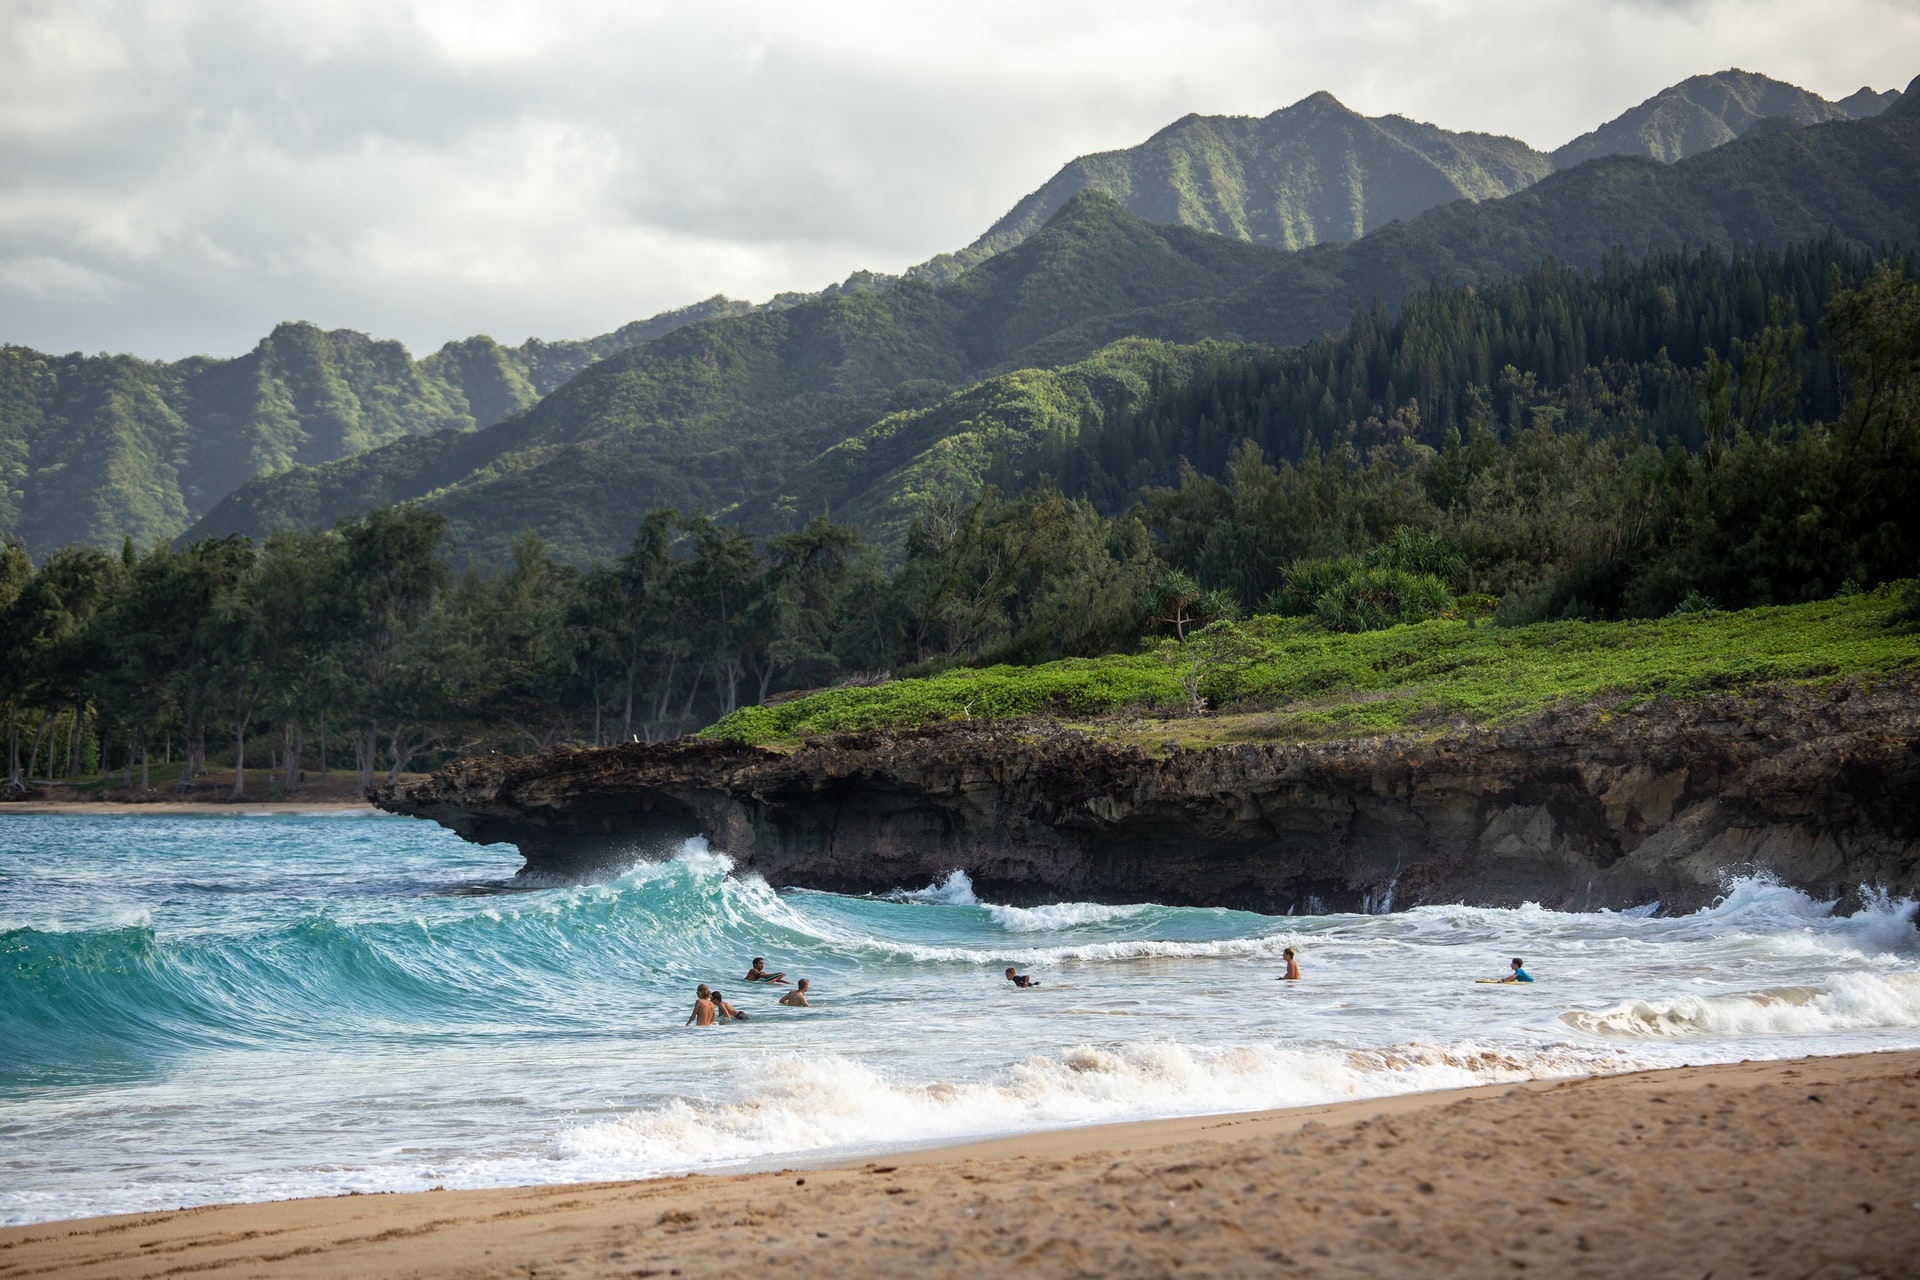 Lanai Insel – Hawaii Steckbrief & Bilder